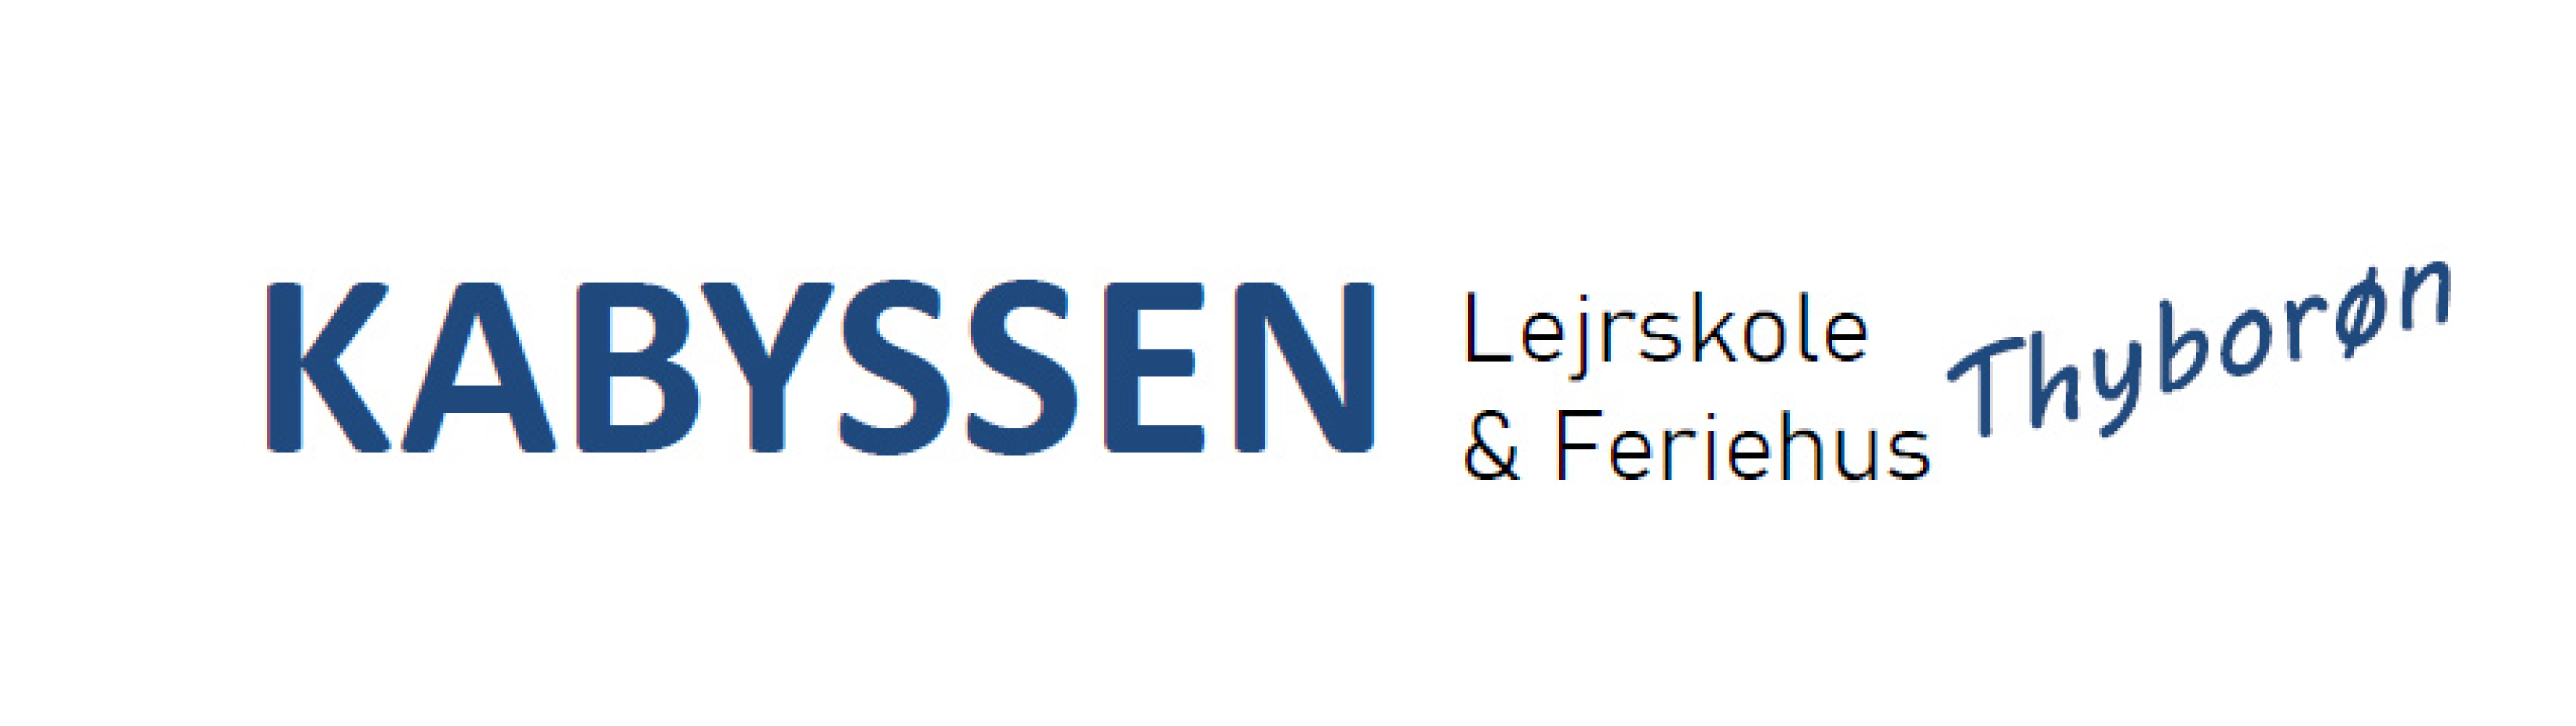 Kabyssen Web Logo (1)